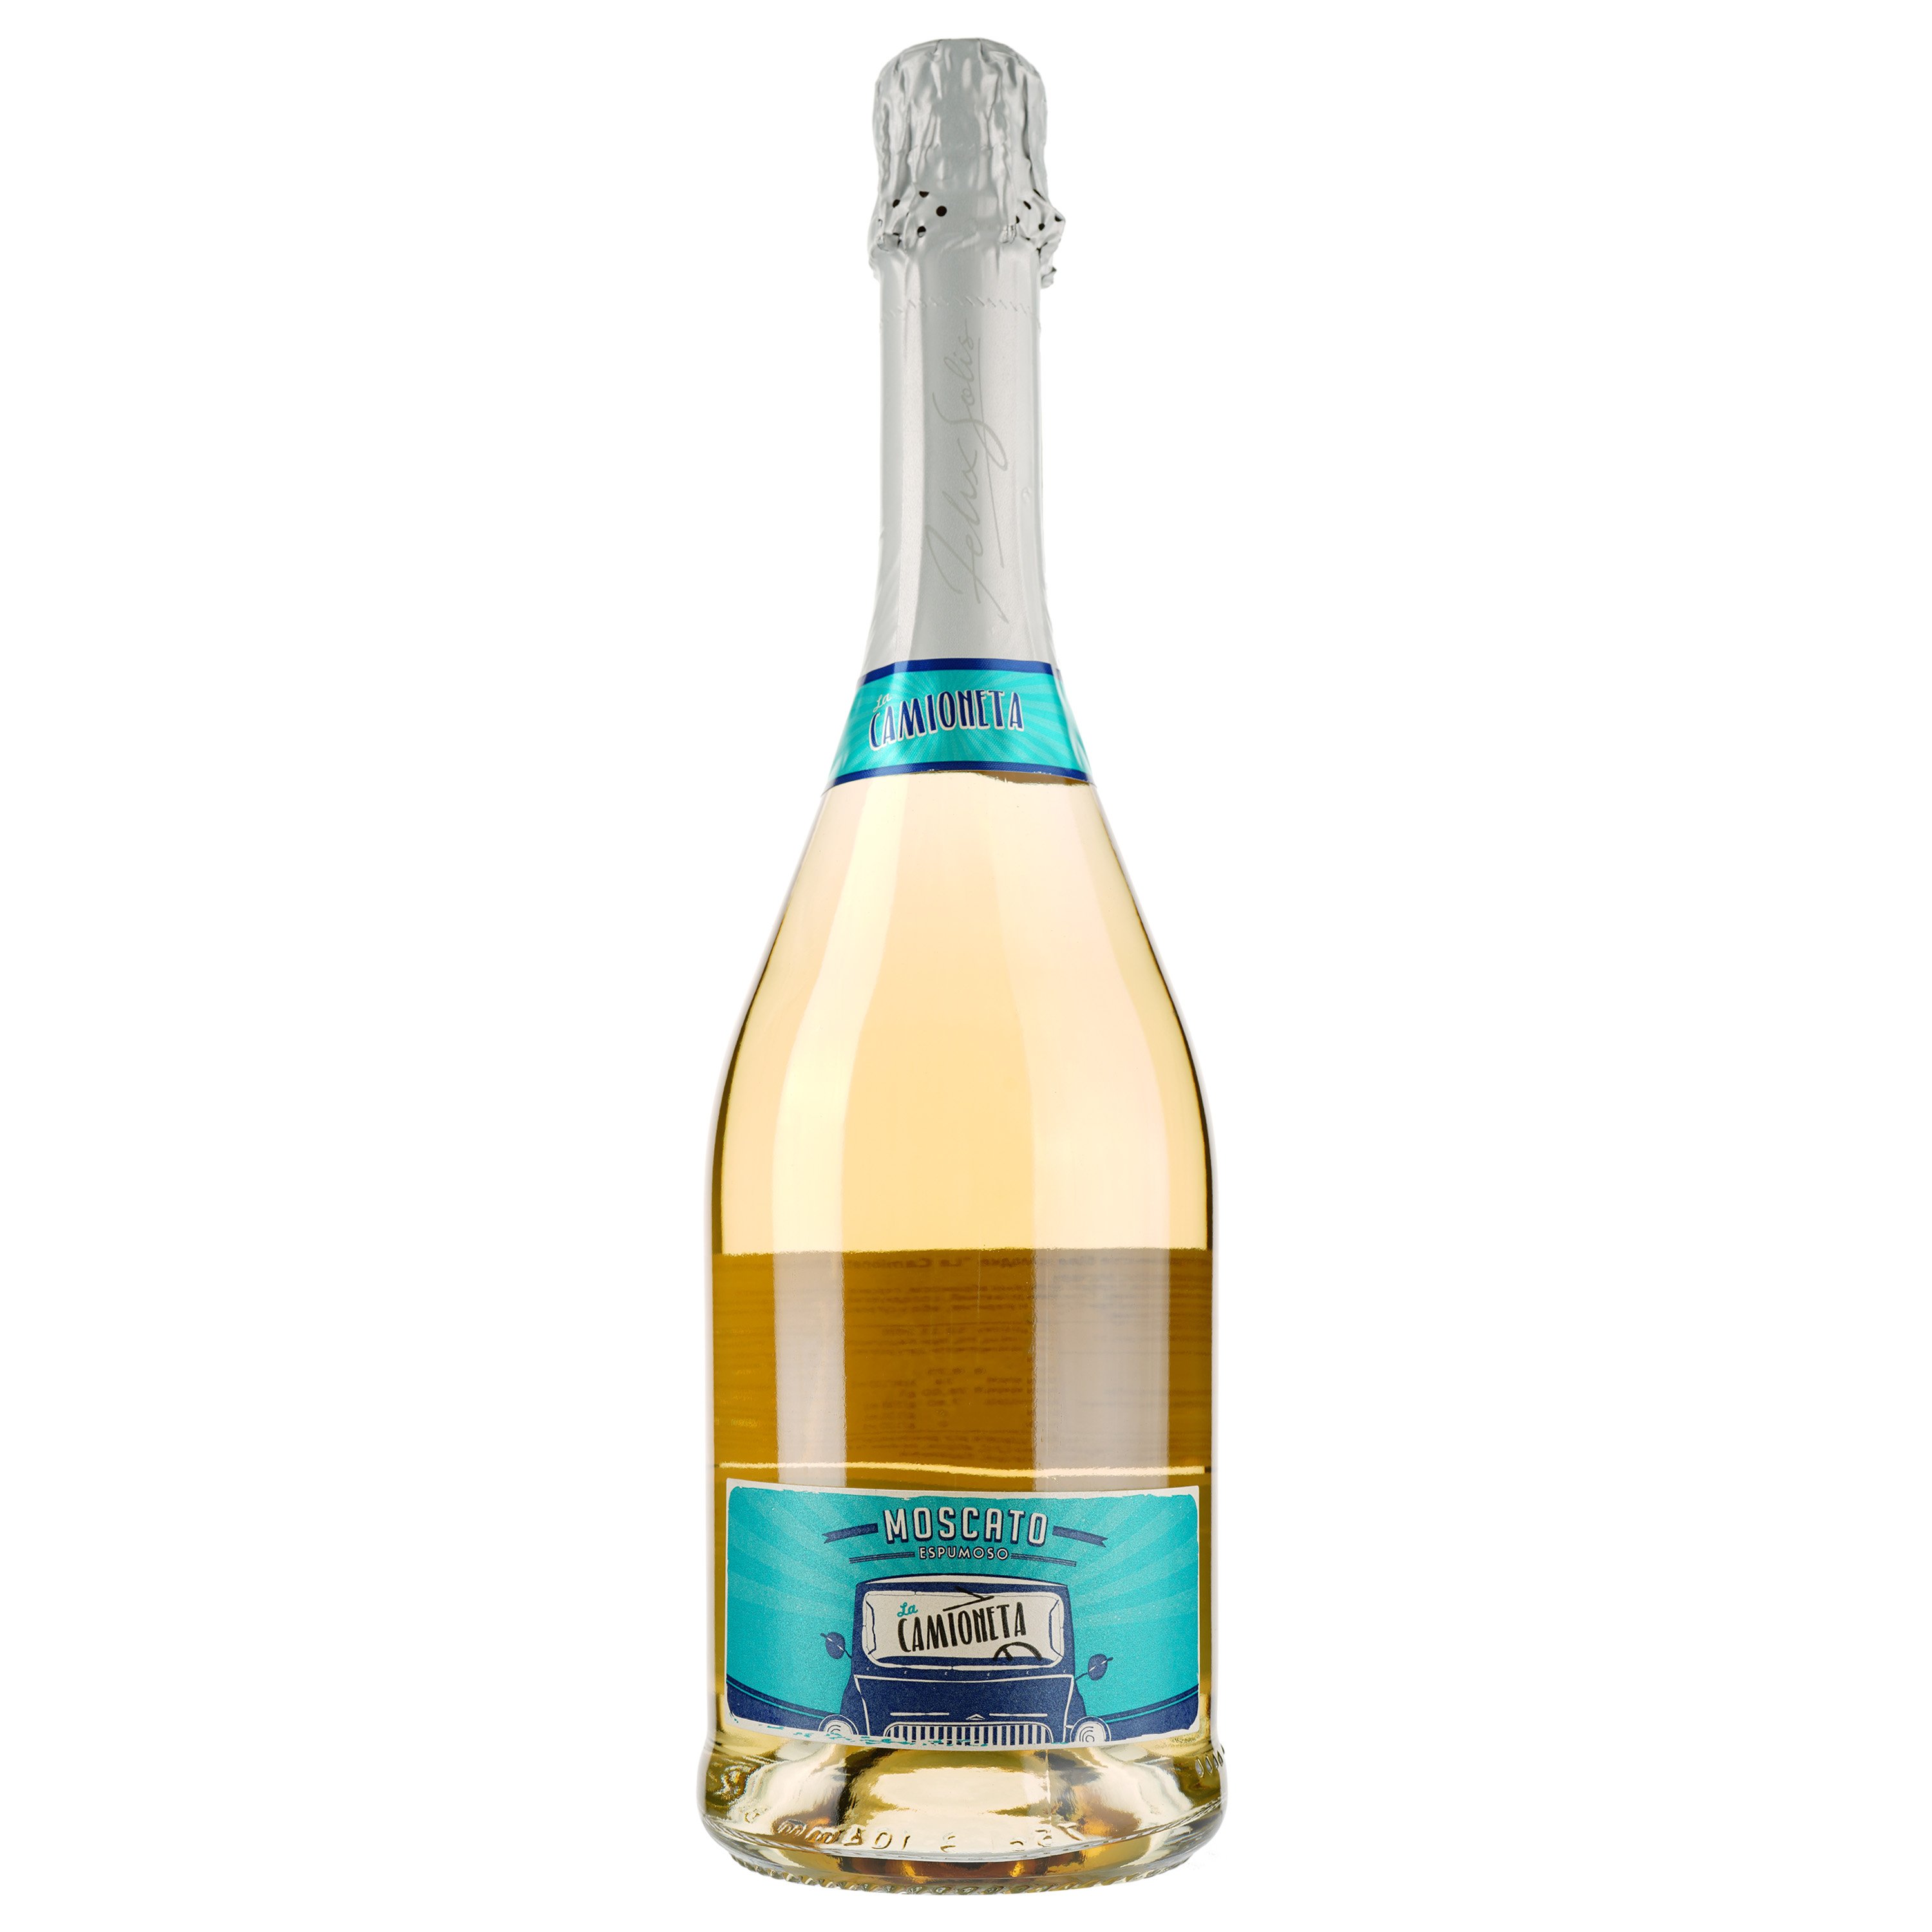 Ігристе вино Felix Solis Avantis La Camioneta Moscato, біле, солодке, 7%, 0,75 л - фото 1